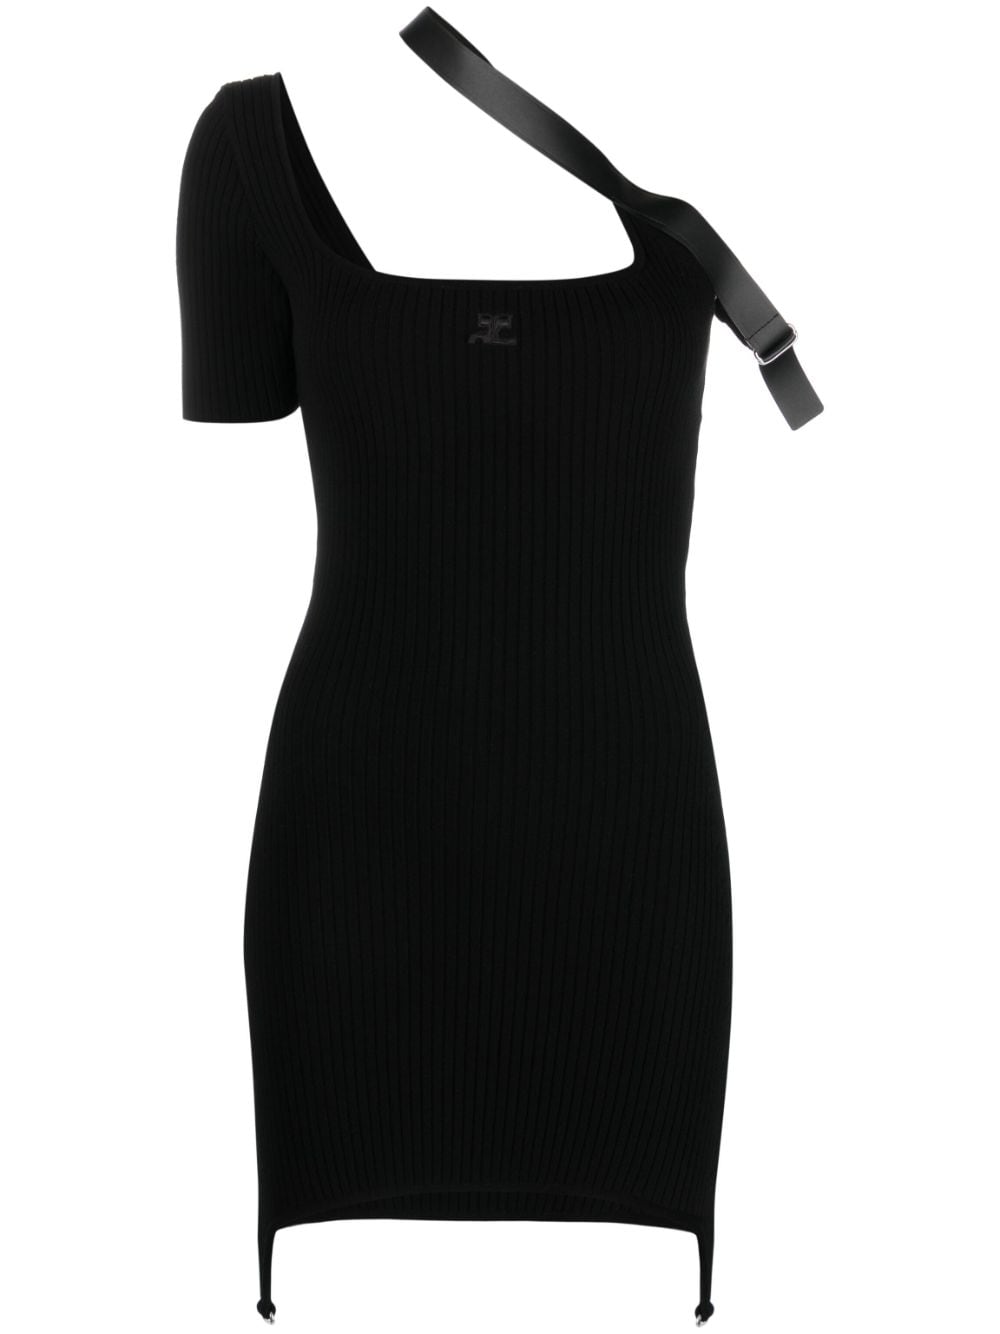 COURREGÈS Black Knit Dress with Biais Strap for Women